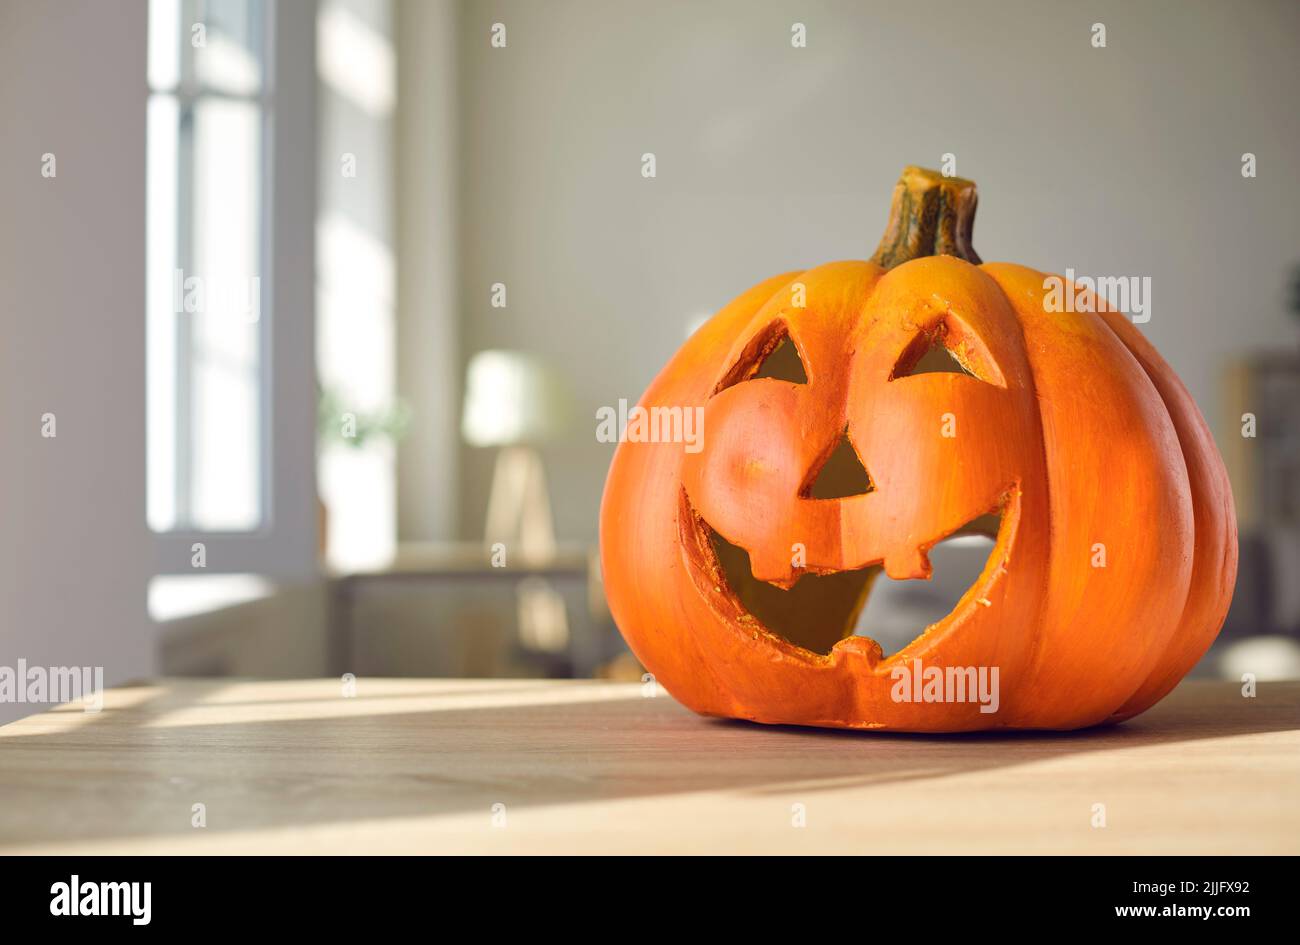 Arrière-plan festif d'Halloween avec une jolie citrouille sculptée sur une table à la maison Banque D'Images